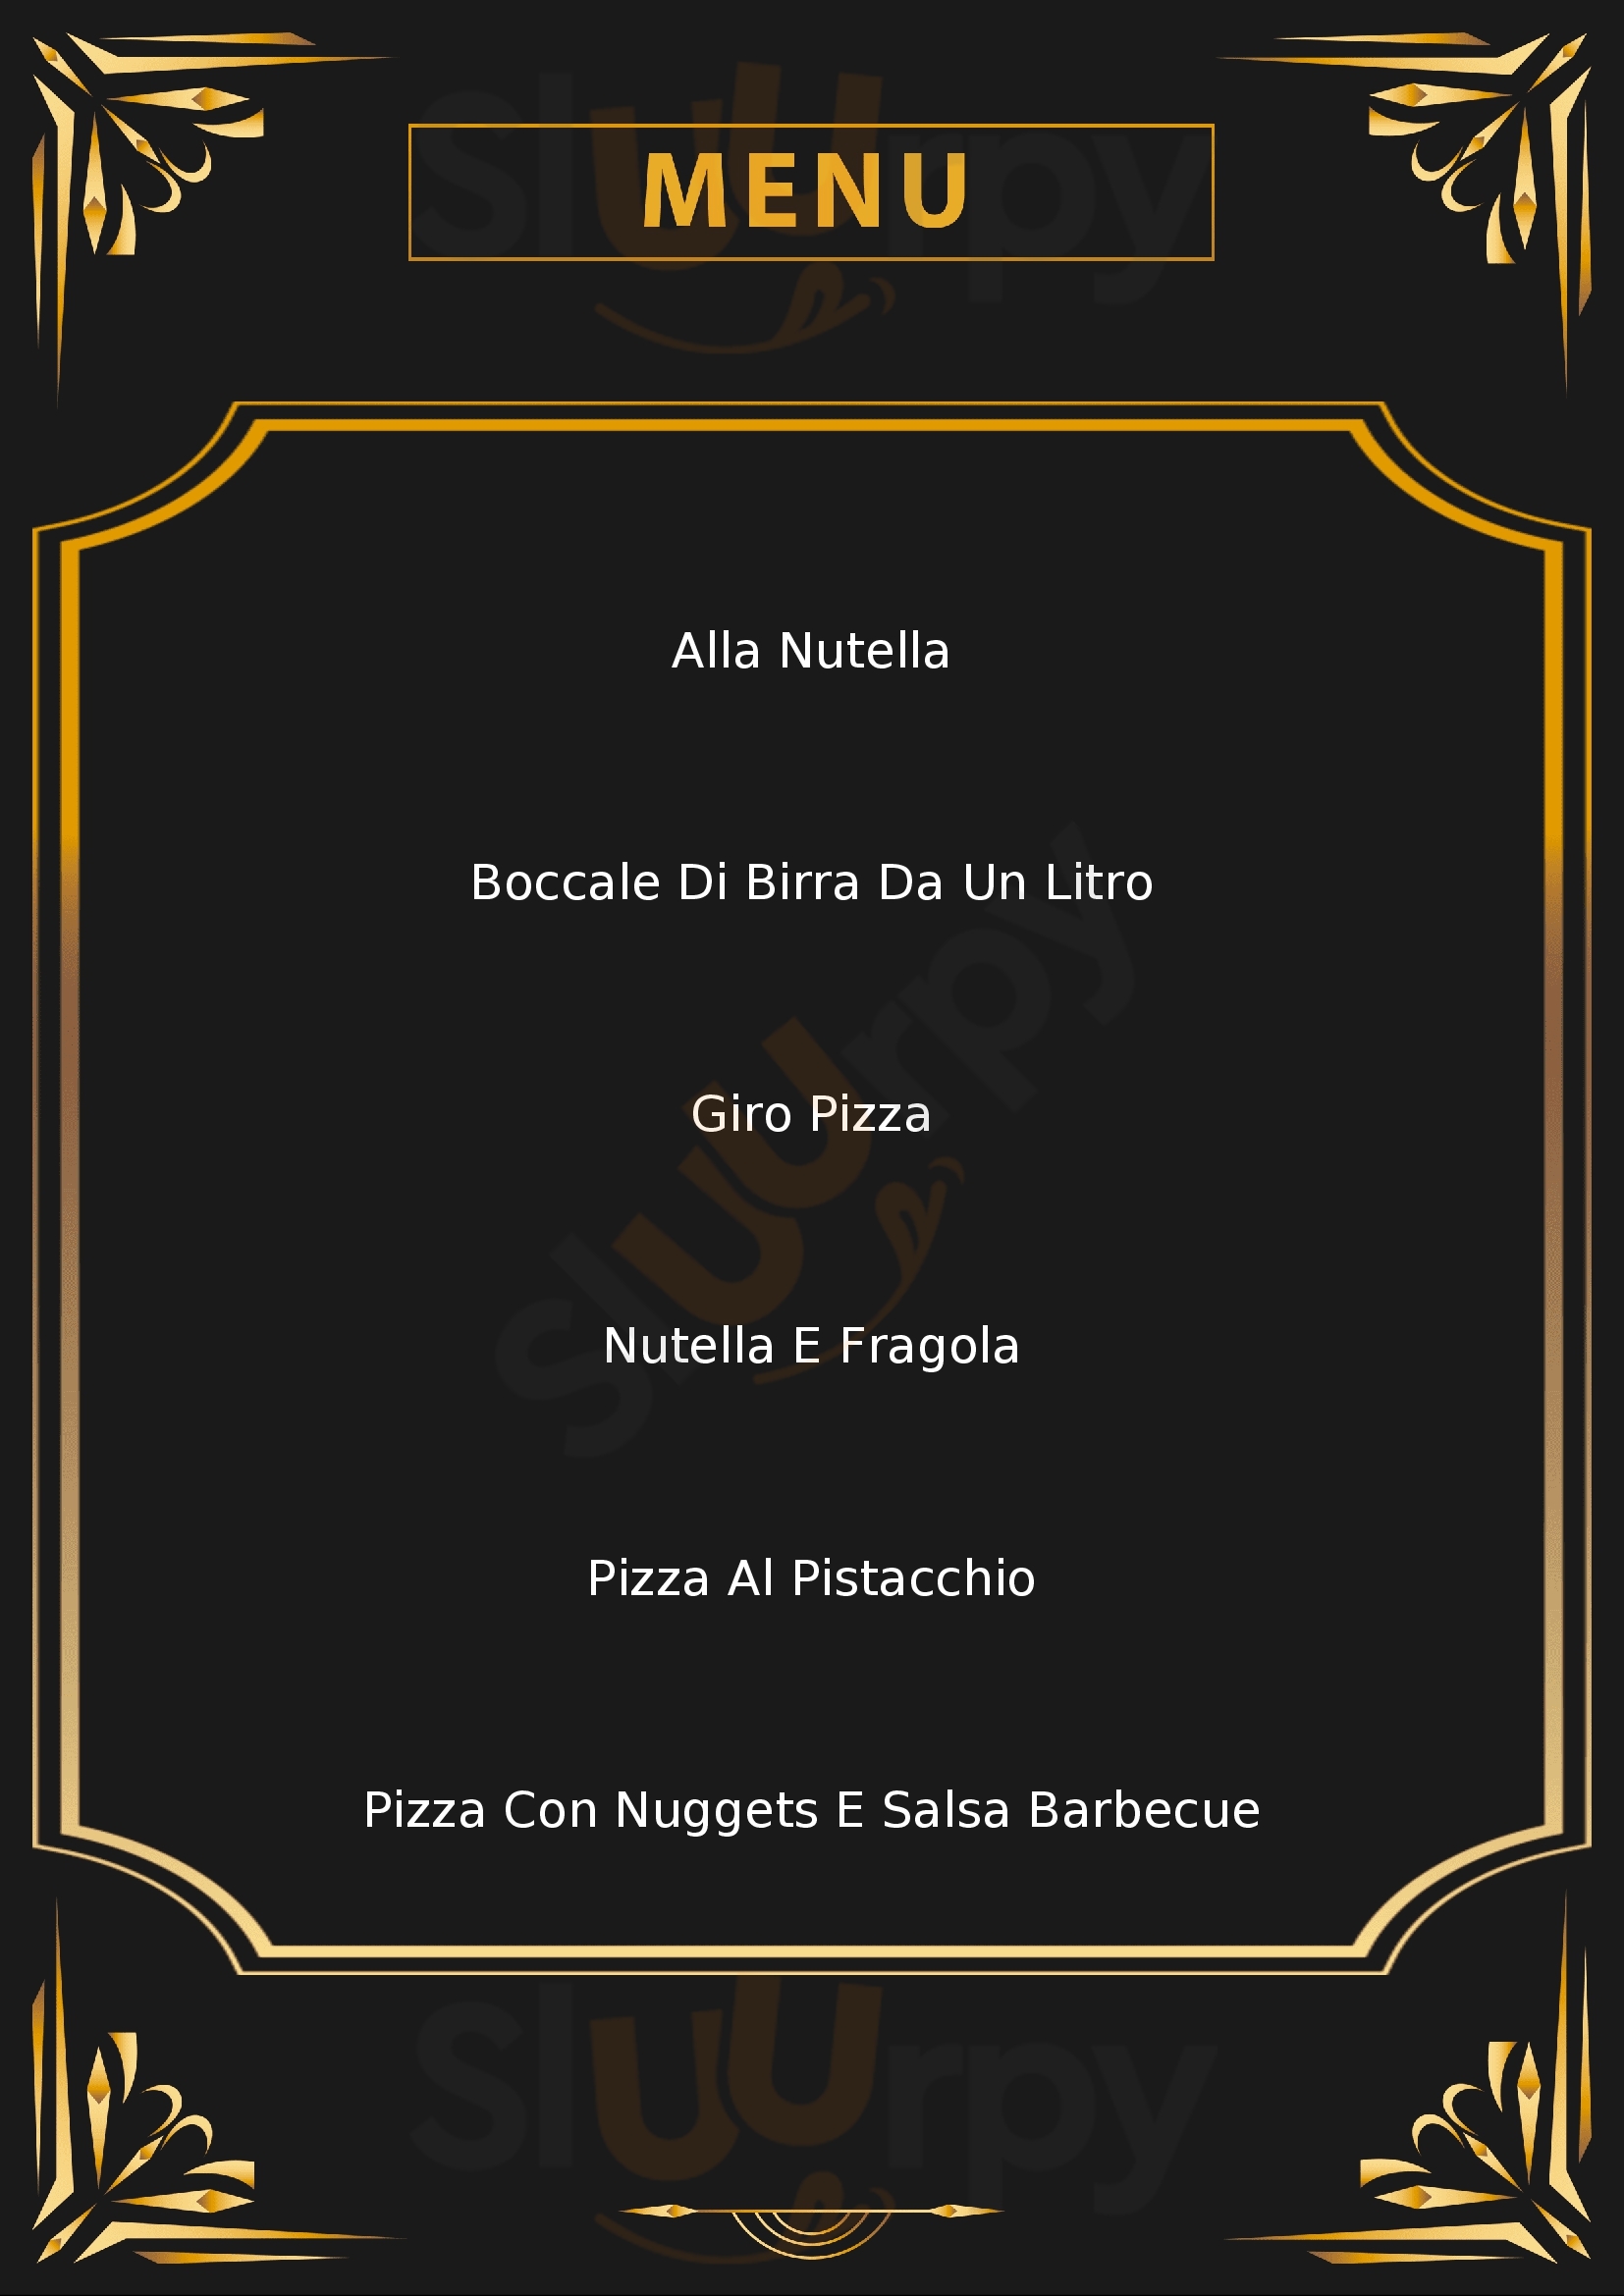 Pizza Club No Limits Milano menù 1 pagina